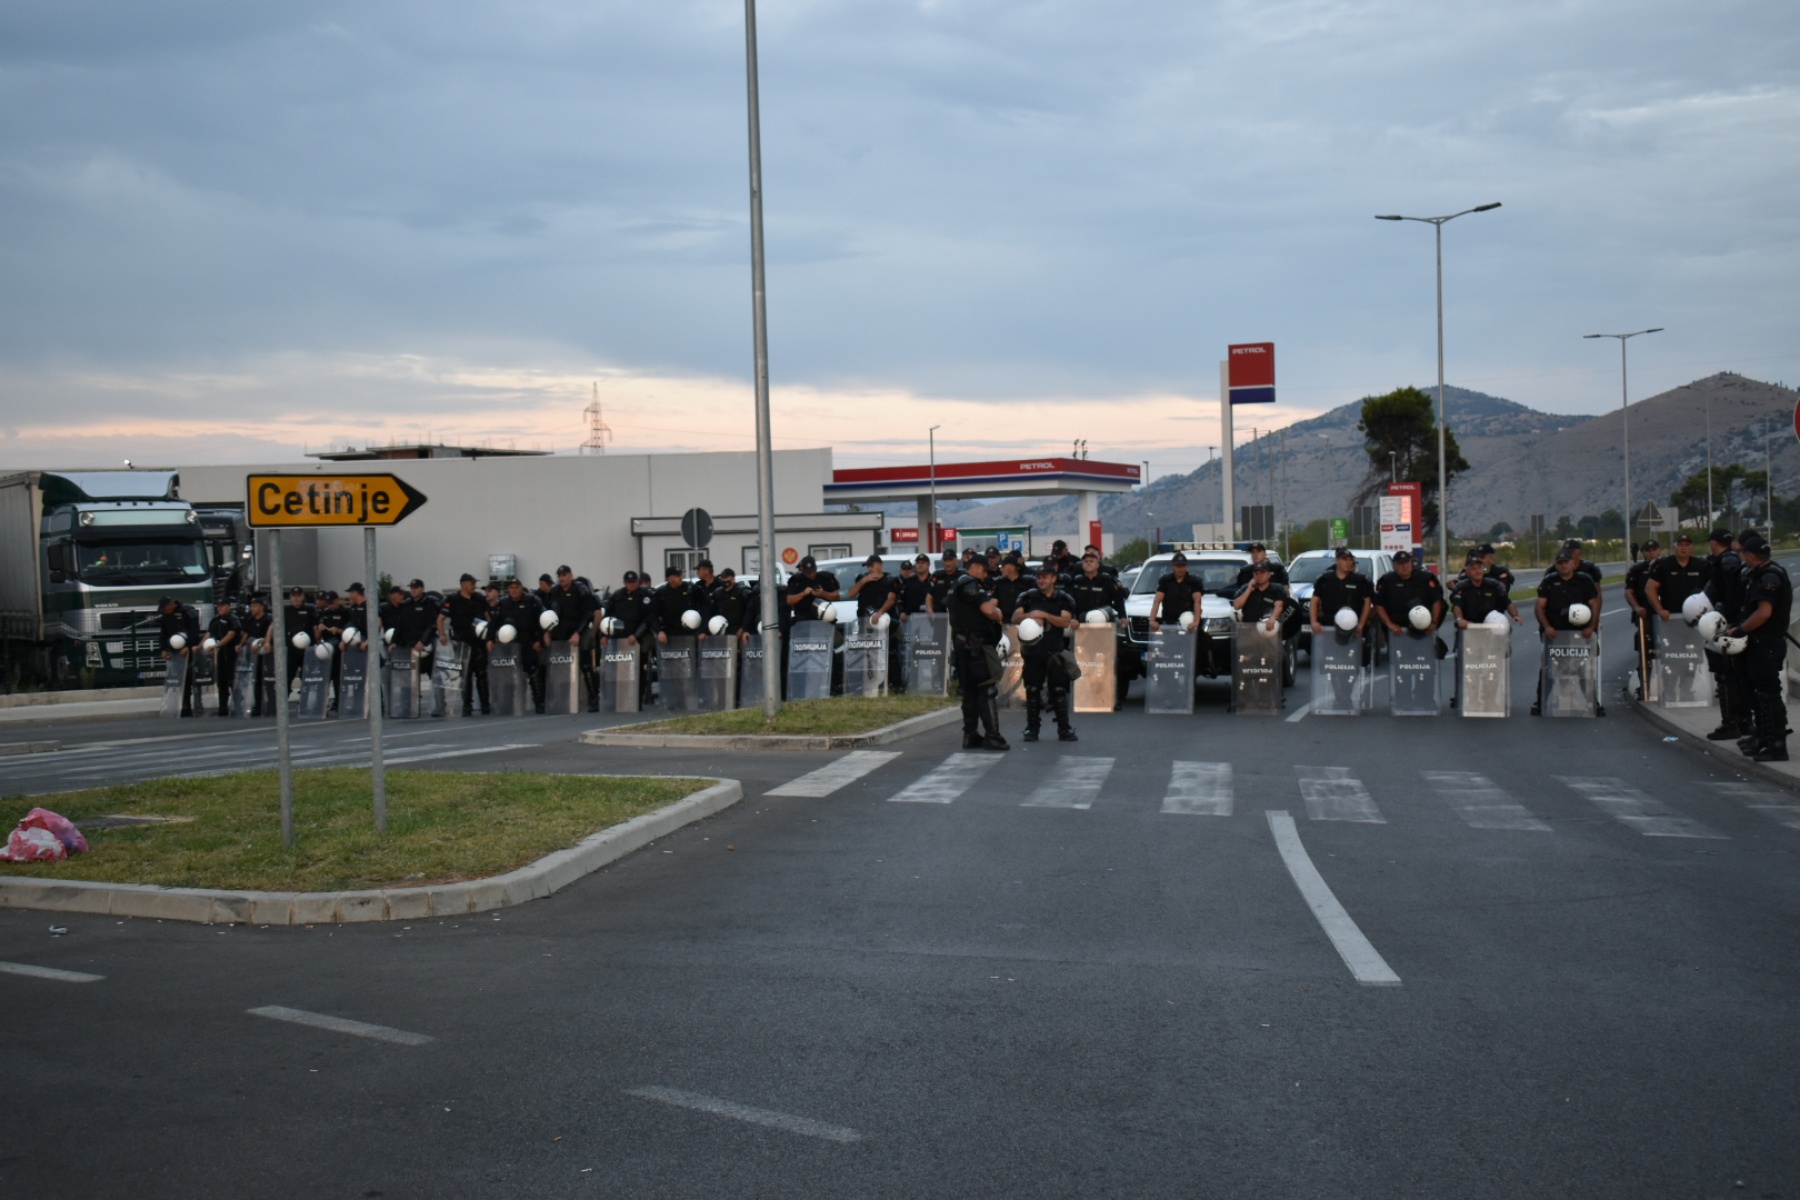 U TOKU NEVJEROVATAN KOKTEL: Krivokapić pozvao 62 pripadnika policije da im se zahvali zbog Cetinja